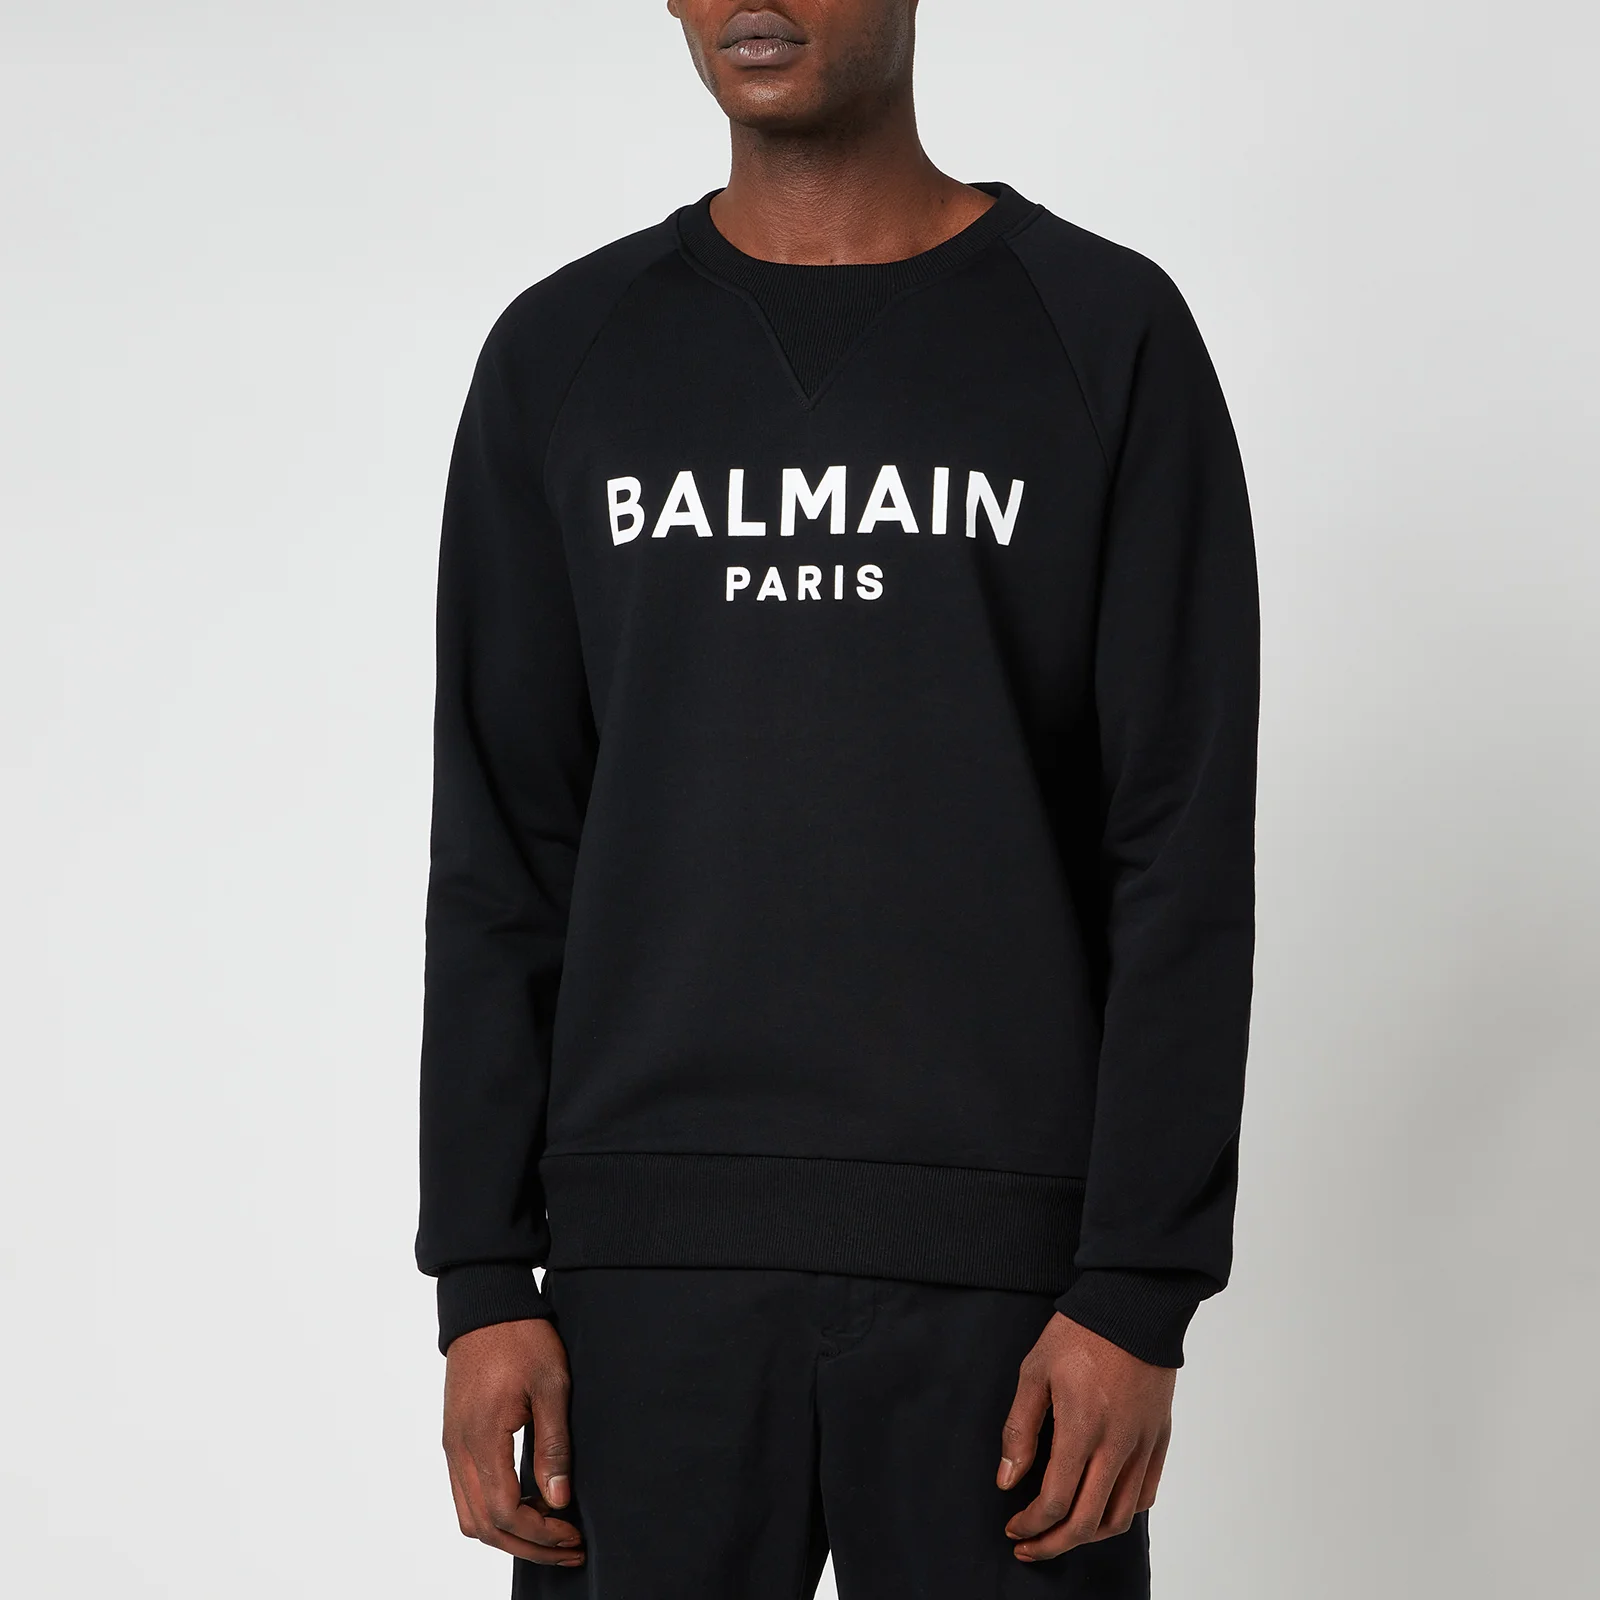 Balmain Men's Printed Sweatshirt - Black/White Image 1